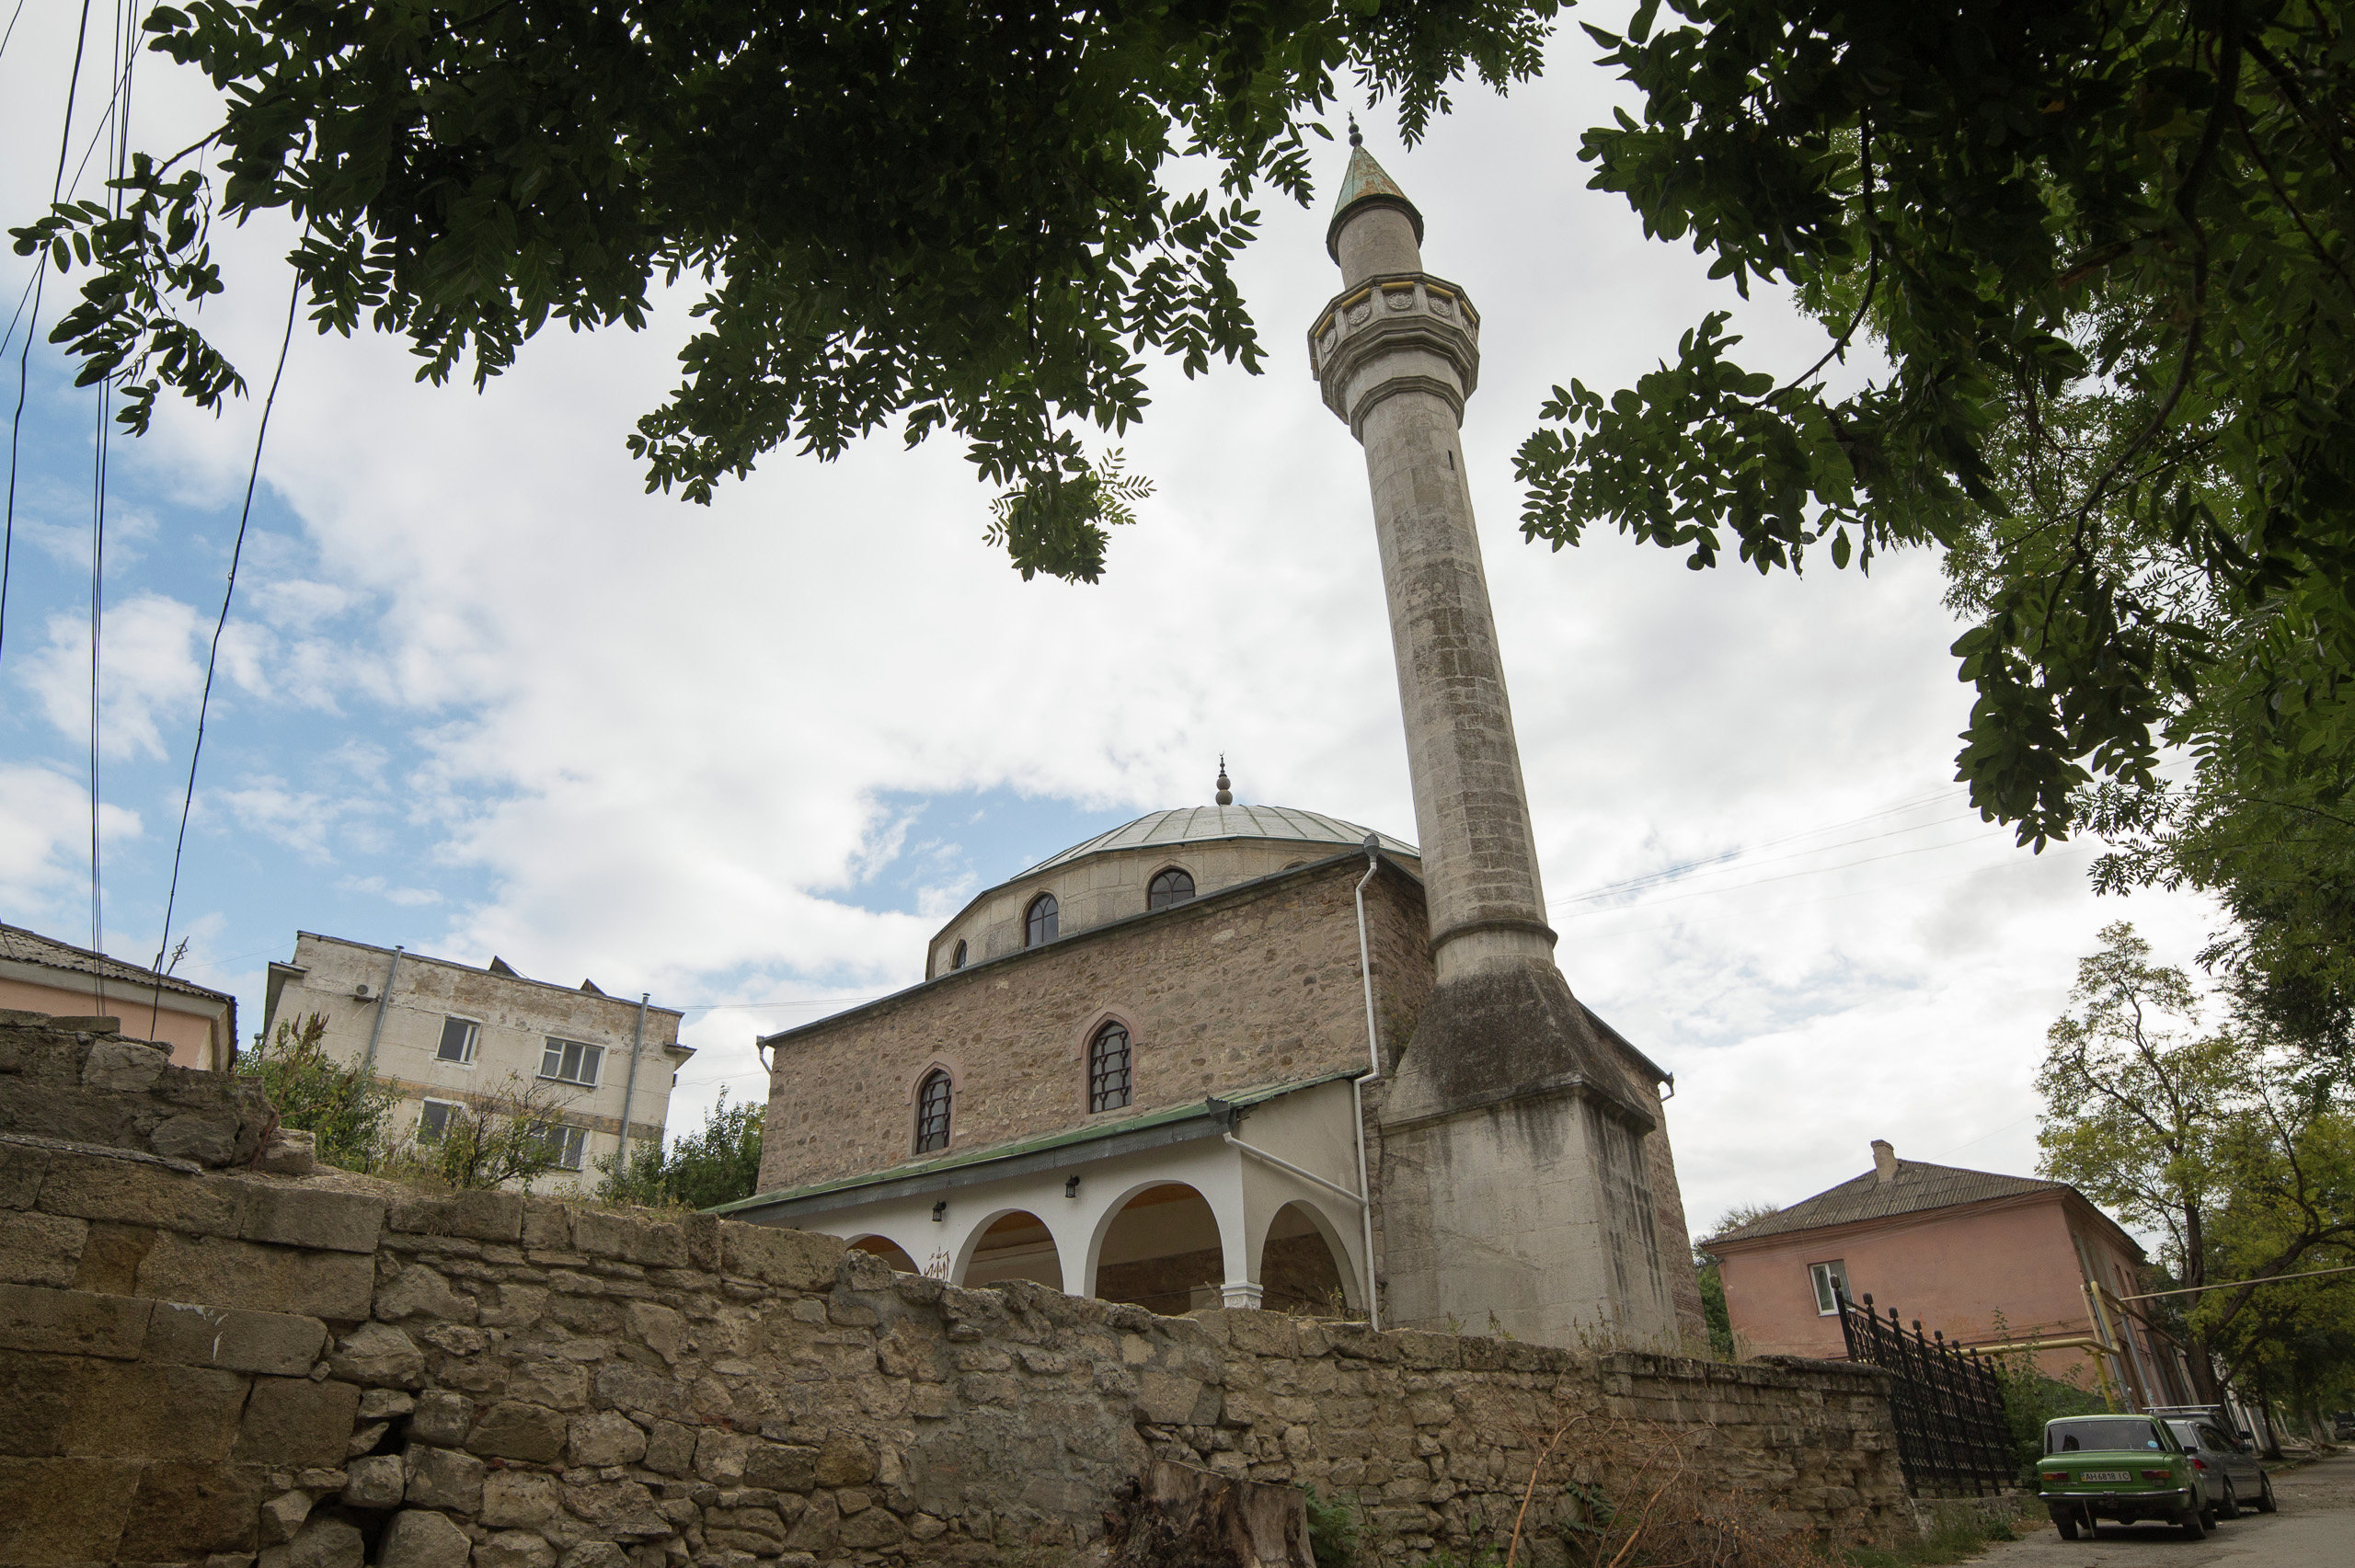 Mufti Cami Mosque in Theodosia